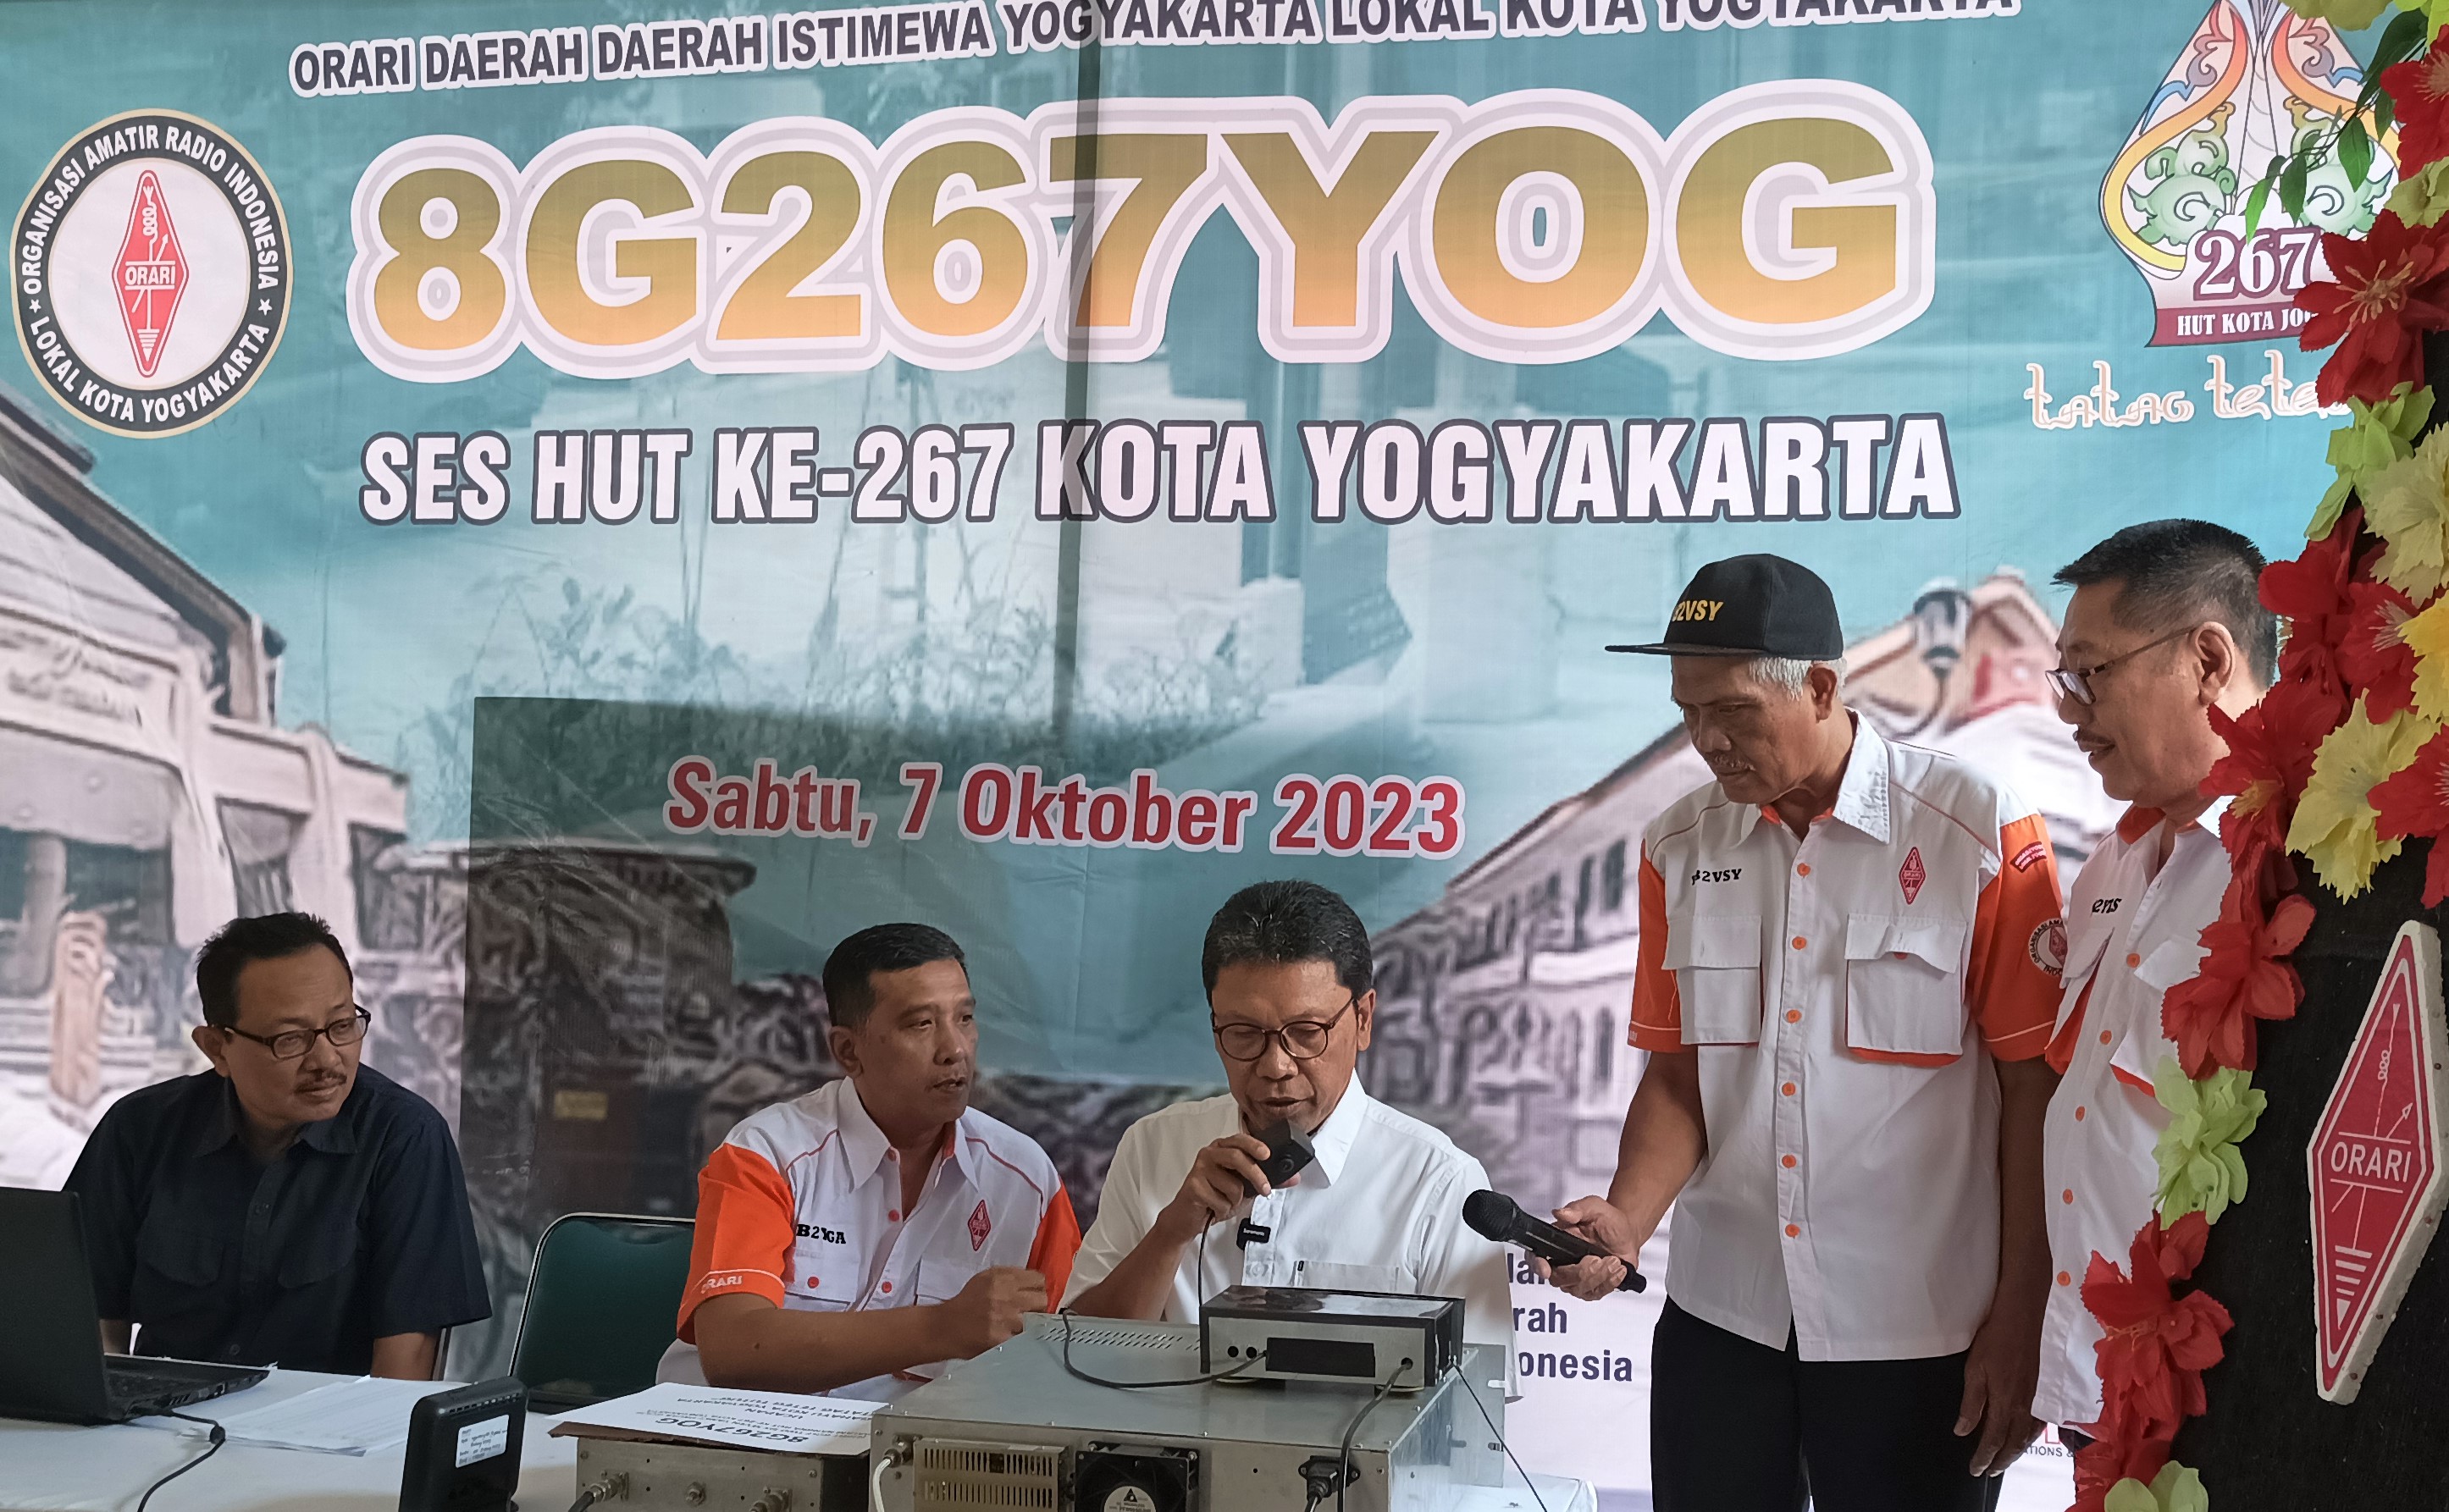 Ucapan HUT ke-267 Kota Jogja Mengudara Lewat Frekuensi Radio Komunikasi di Seluruh Indonesia